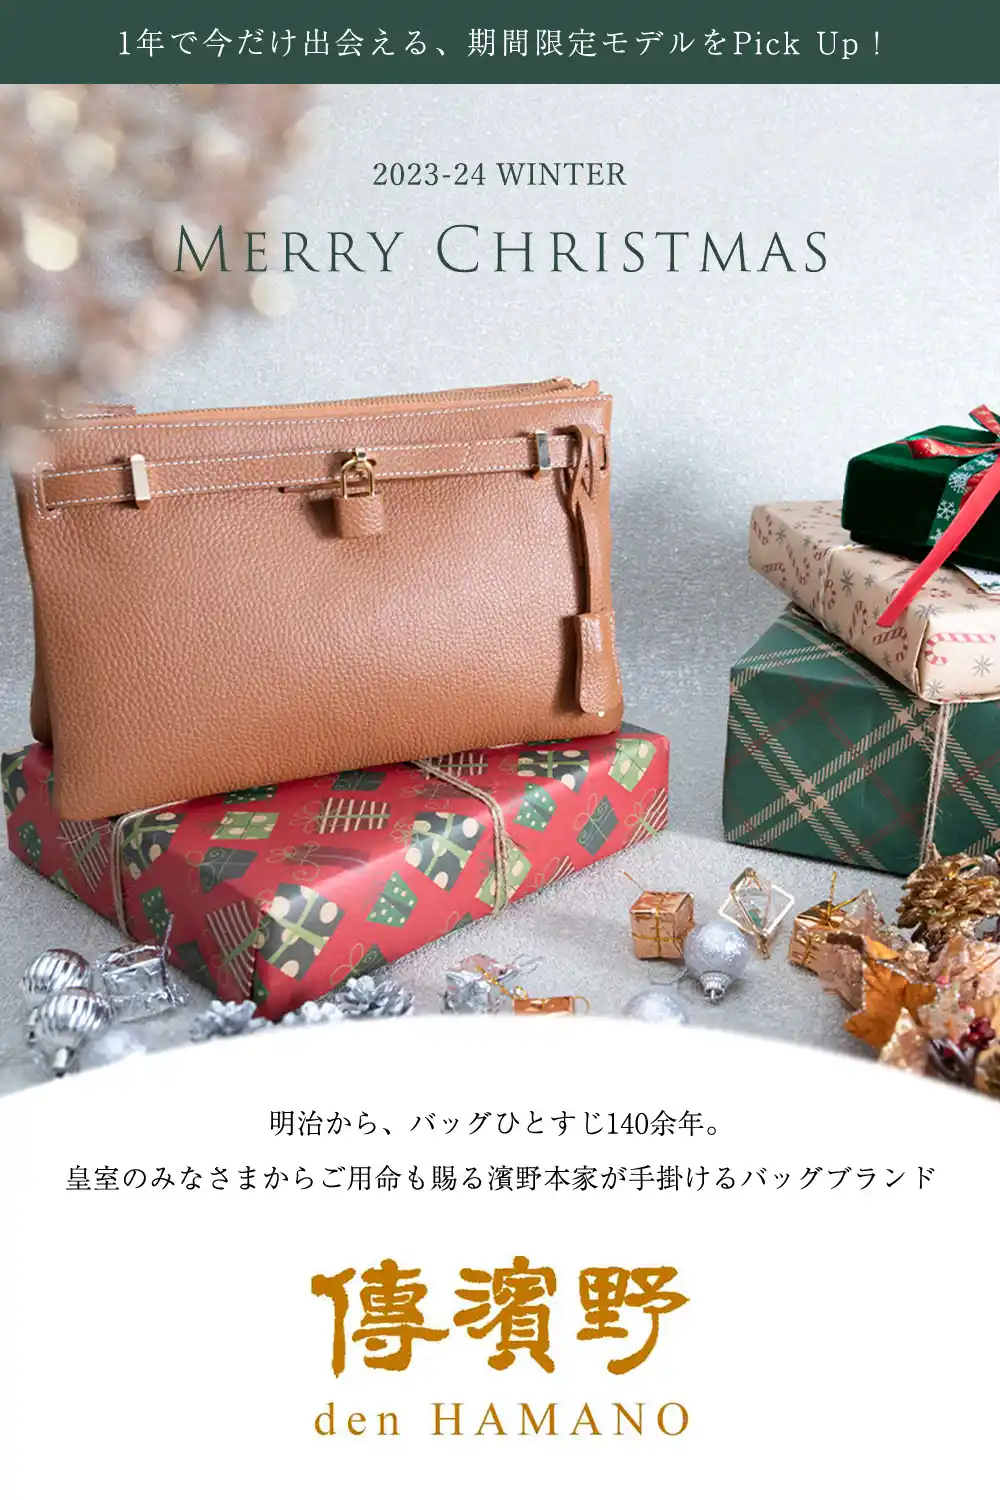 傳濱野はんどばっぐの人気2wayショルダー ミーティア ヴィヴィより、クリスマス限定色のメルティキャラメル